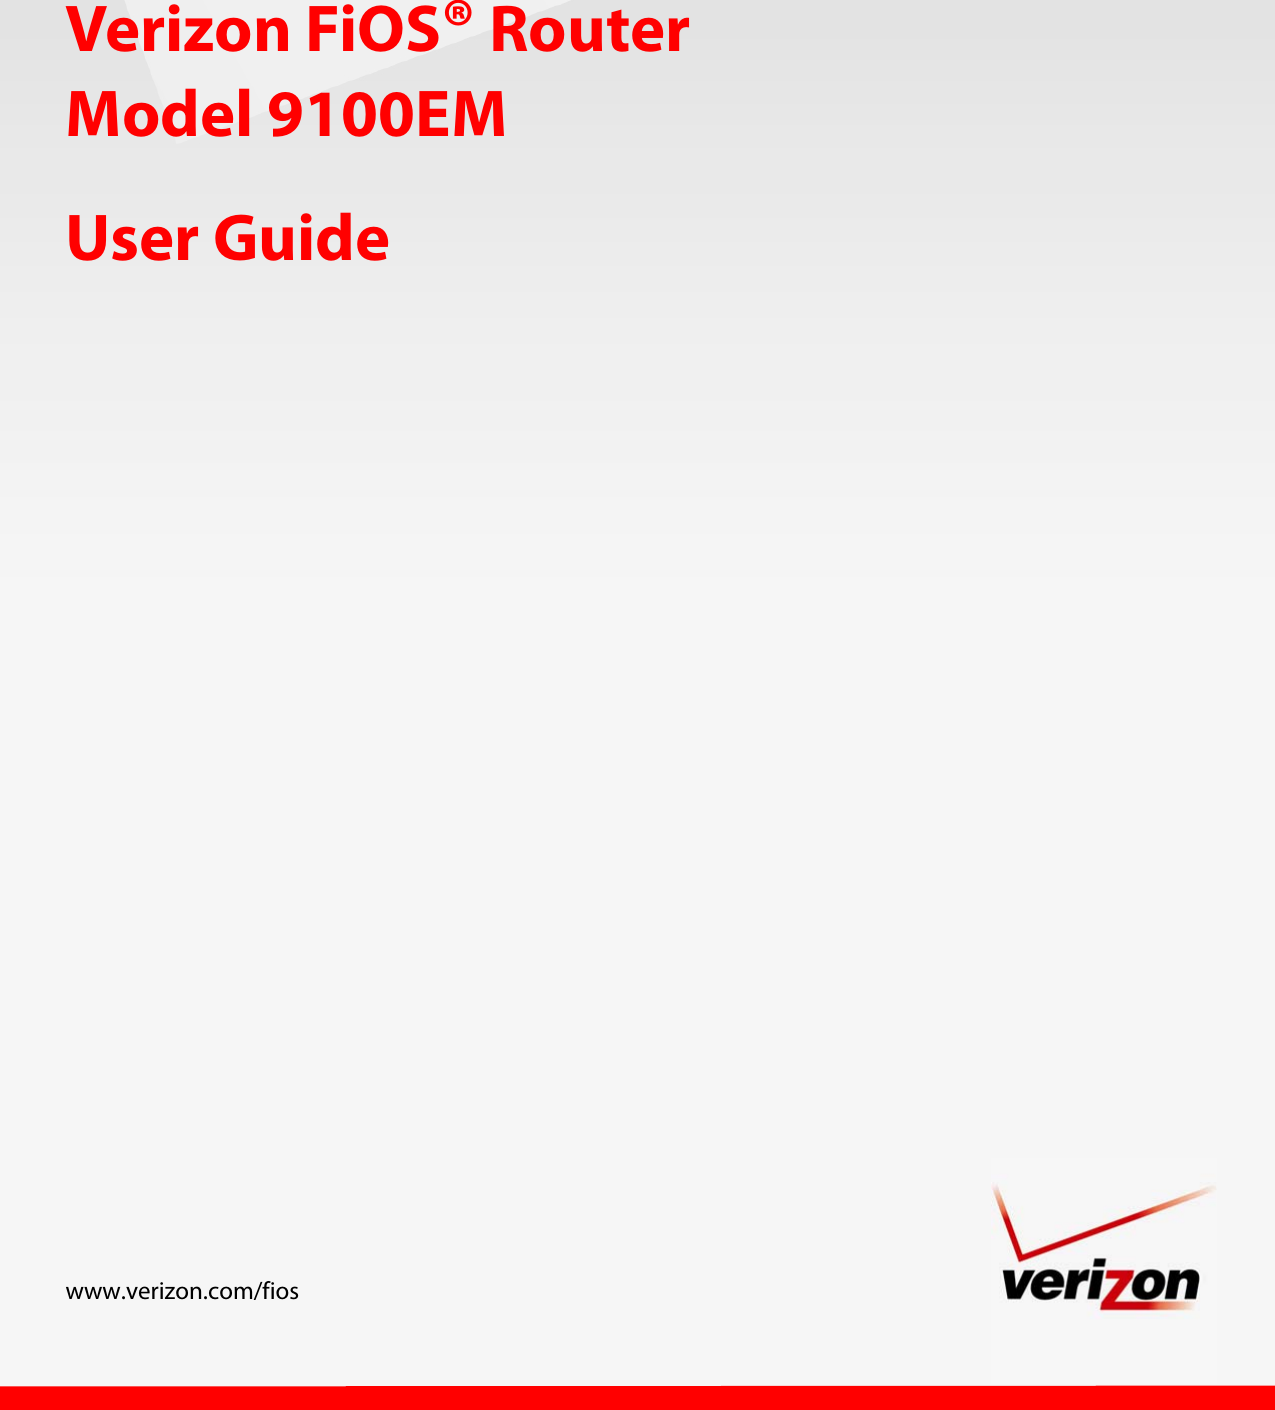                        User Guide www.verizon.com/fios Verizon FiOS® Router Model 9100EM 